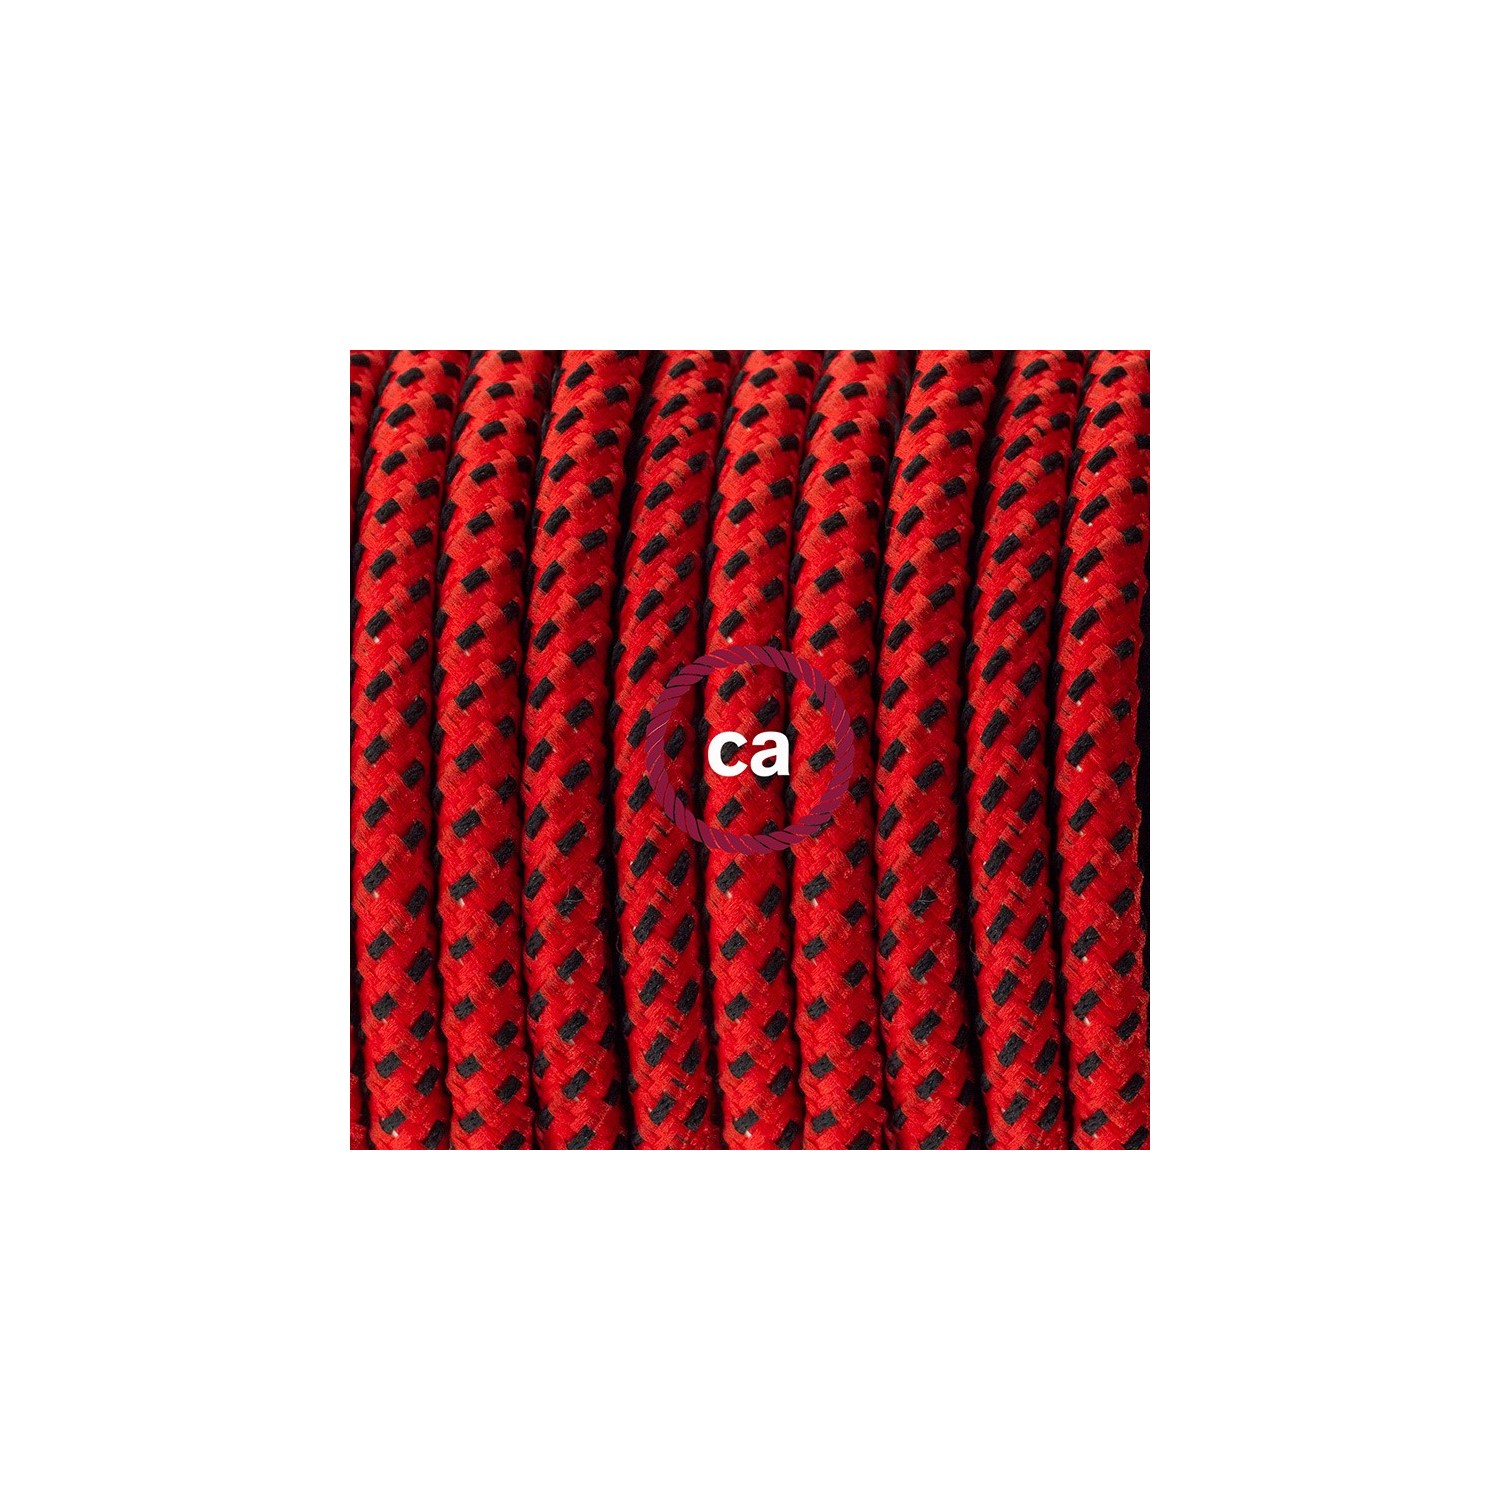 Napájací kábel pre stolnú lampu, RT94 Red Devil hodvábny 1,80 m. Vyberte si farbu zástrčky a vypínača.